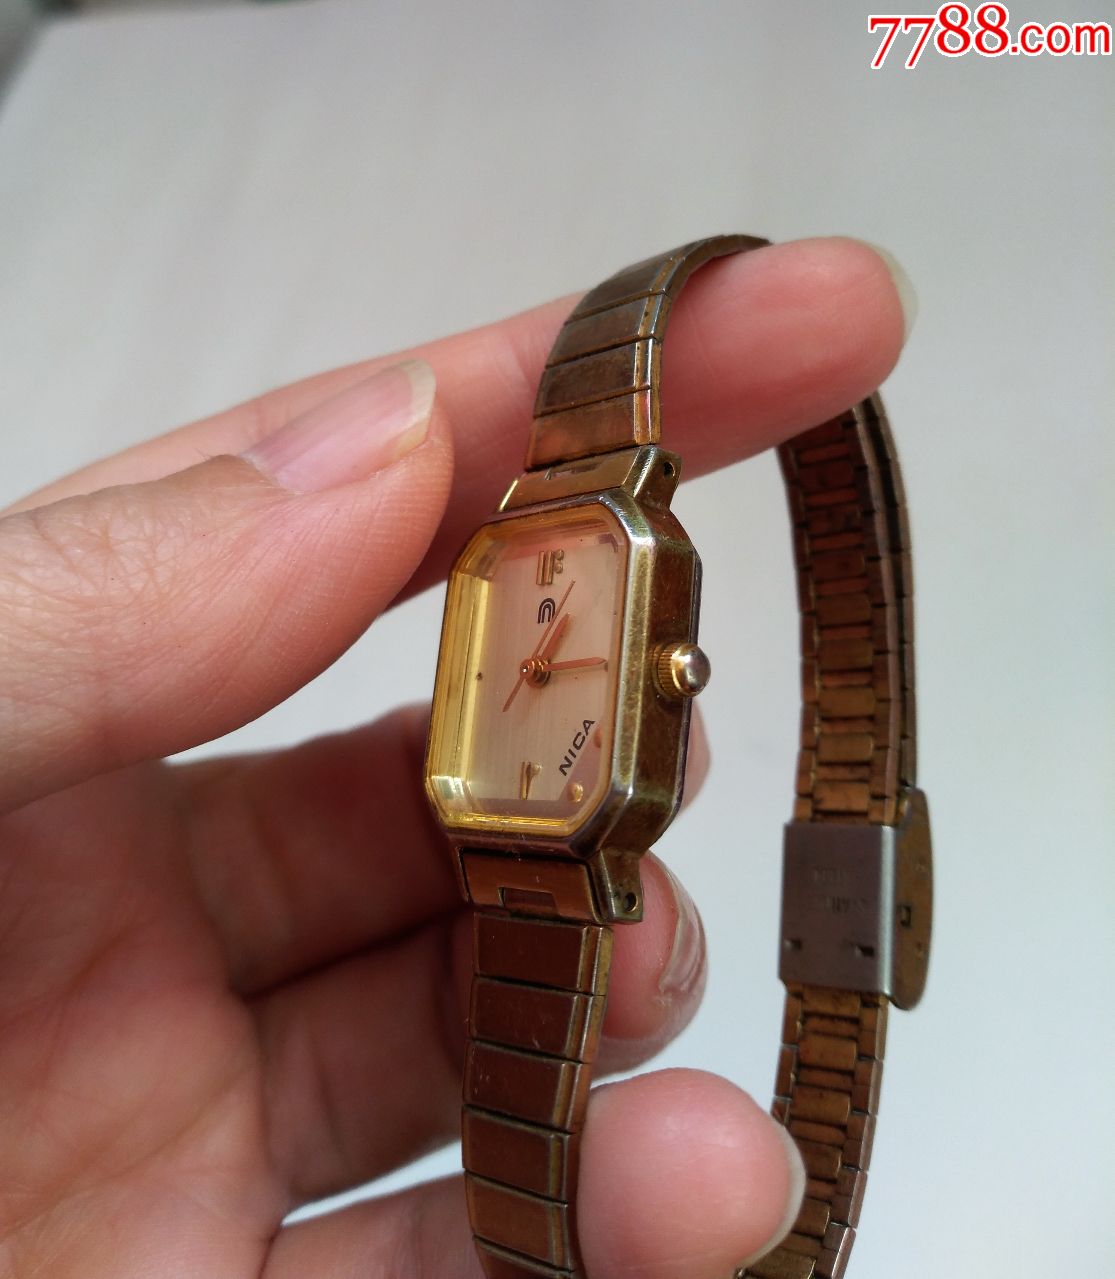 nica,石英女款手表,设计独特,标志右下,少见,点图看放大